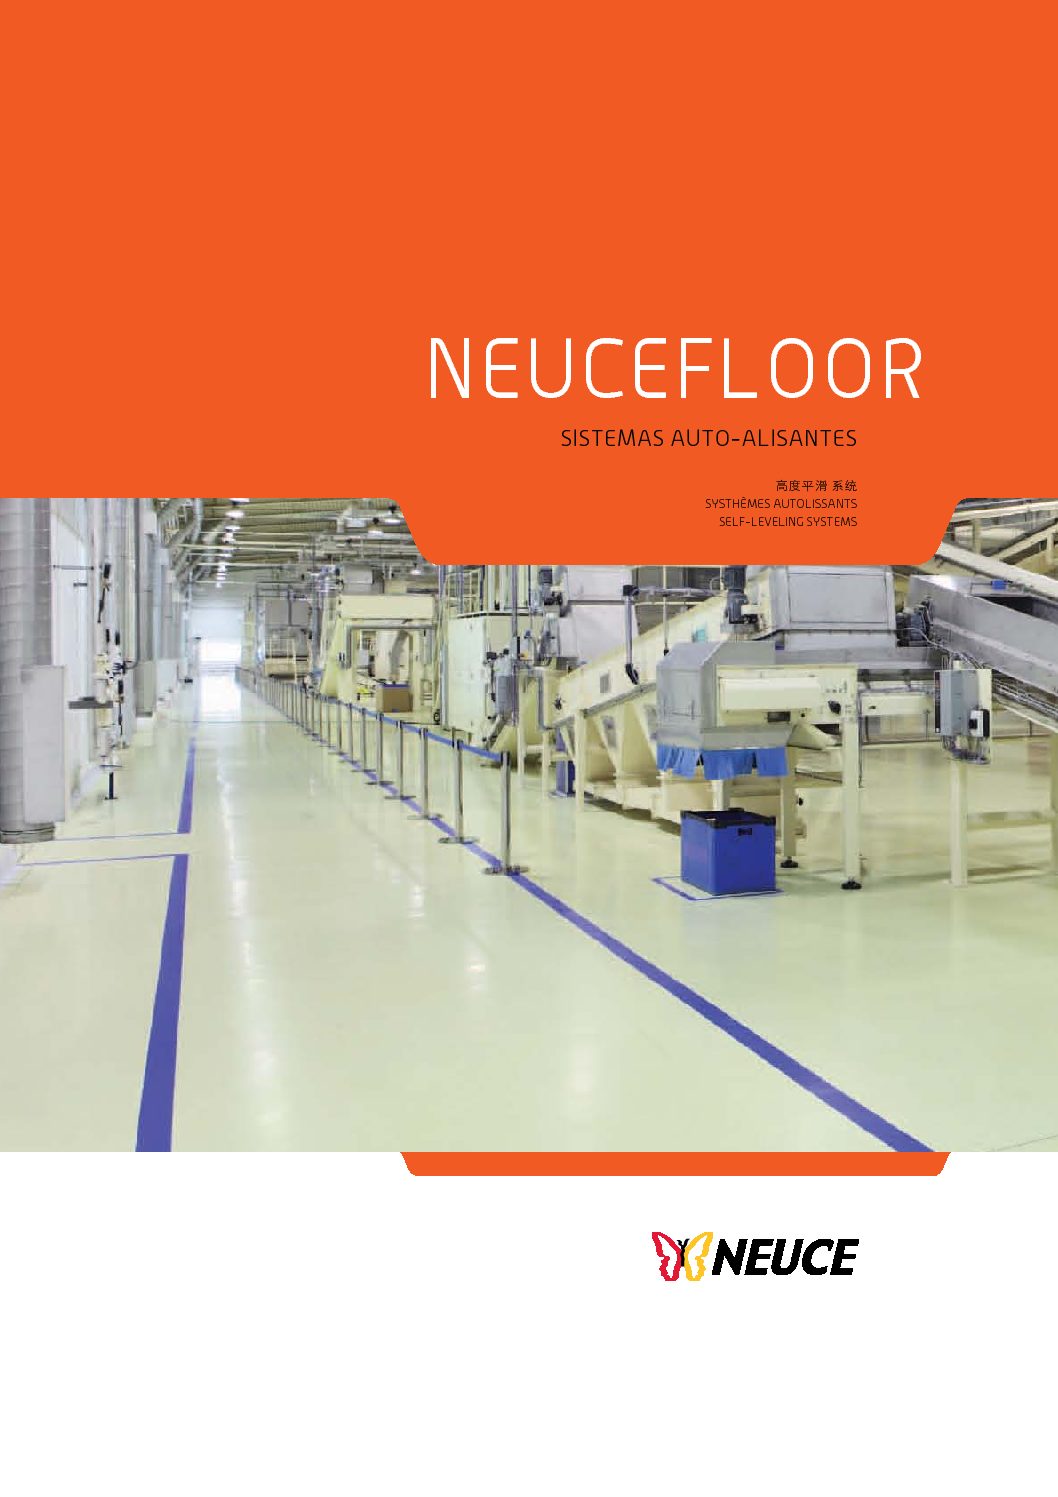 Neuce - Neucefloor